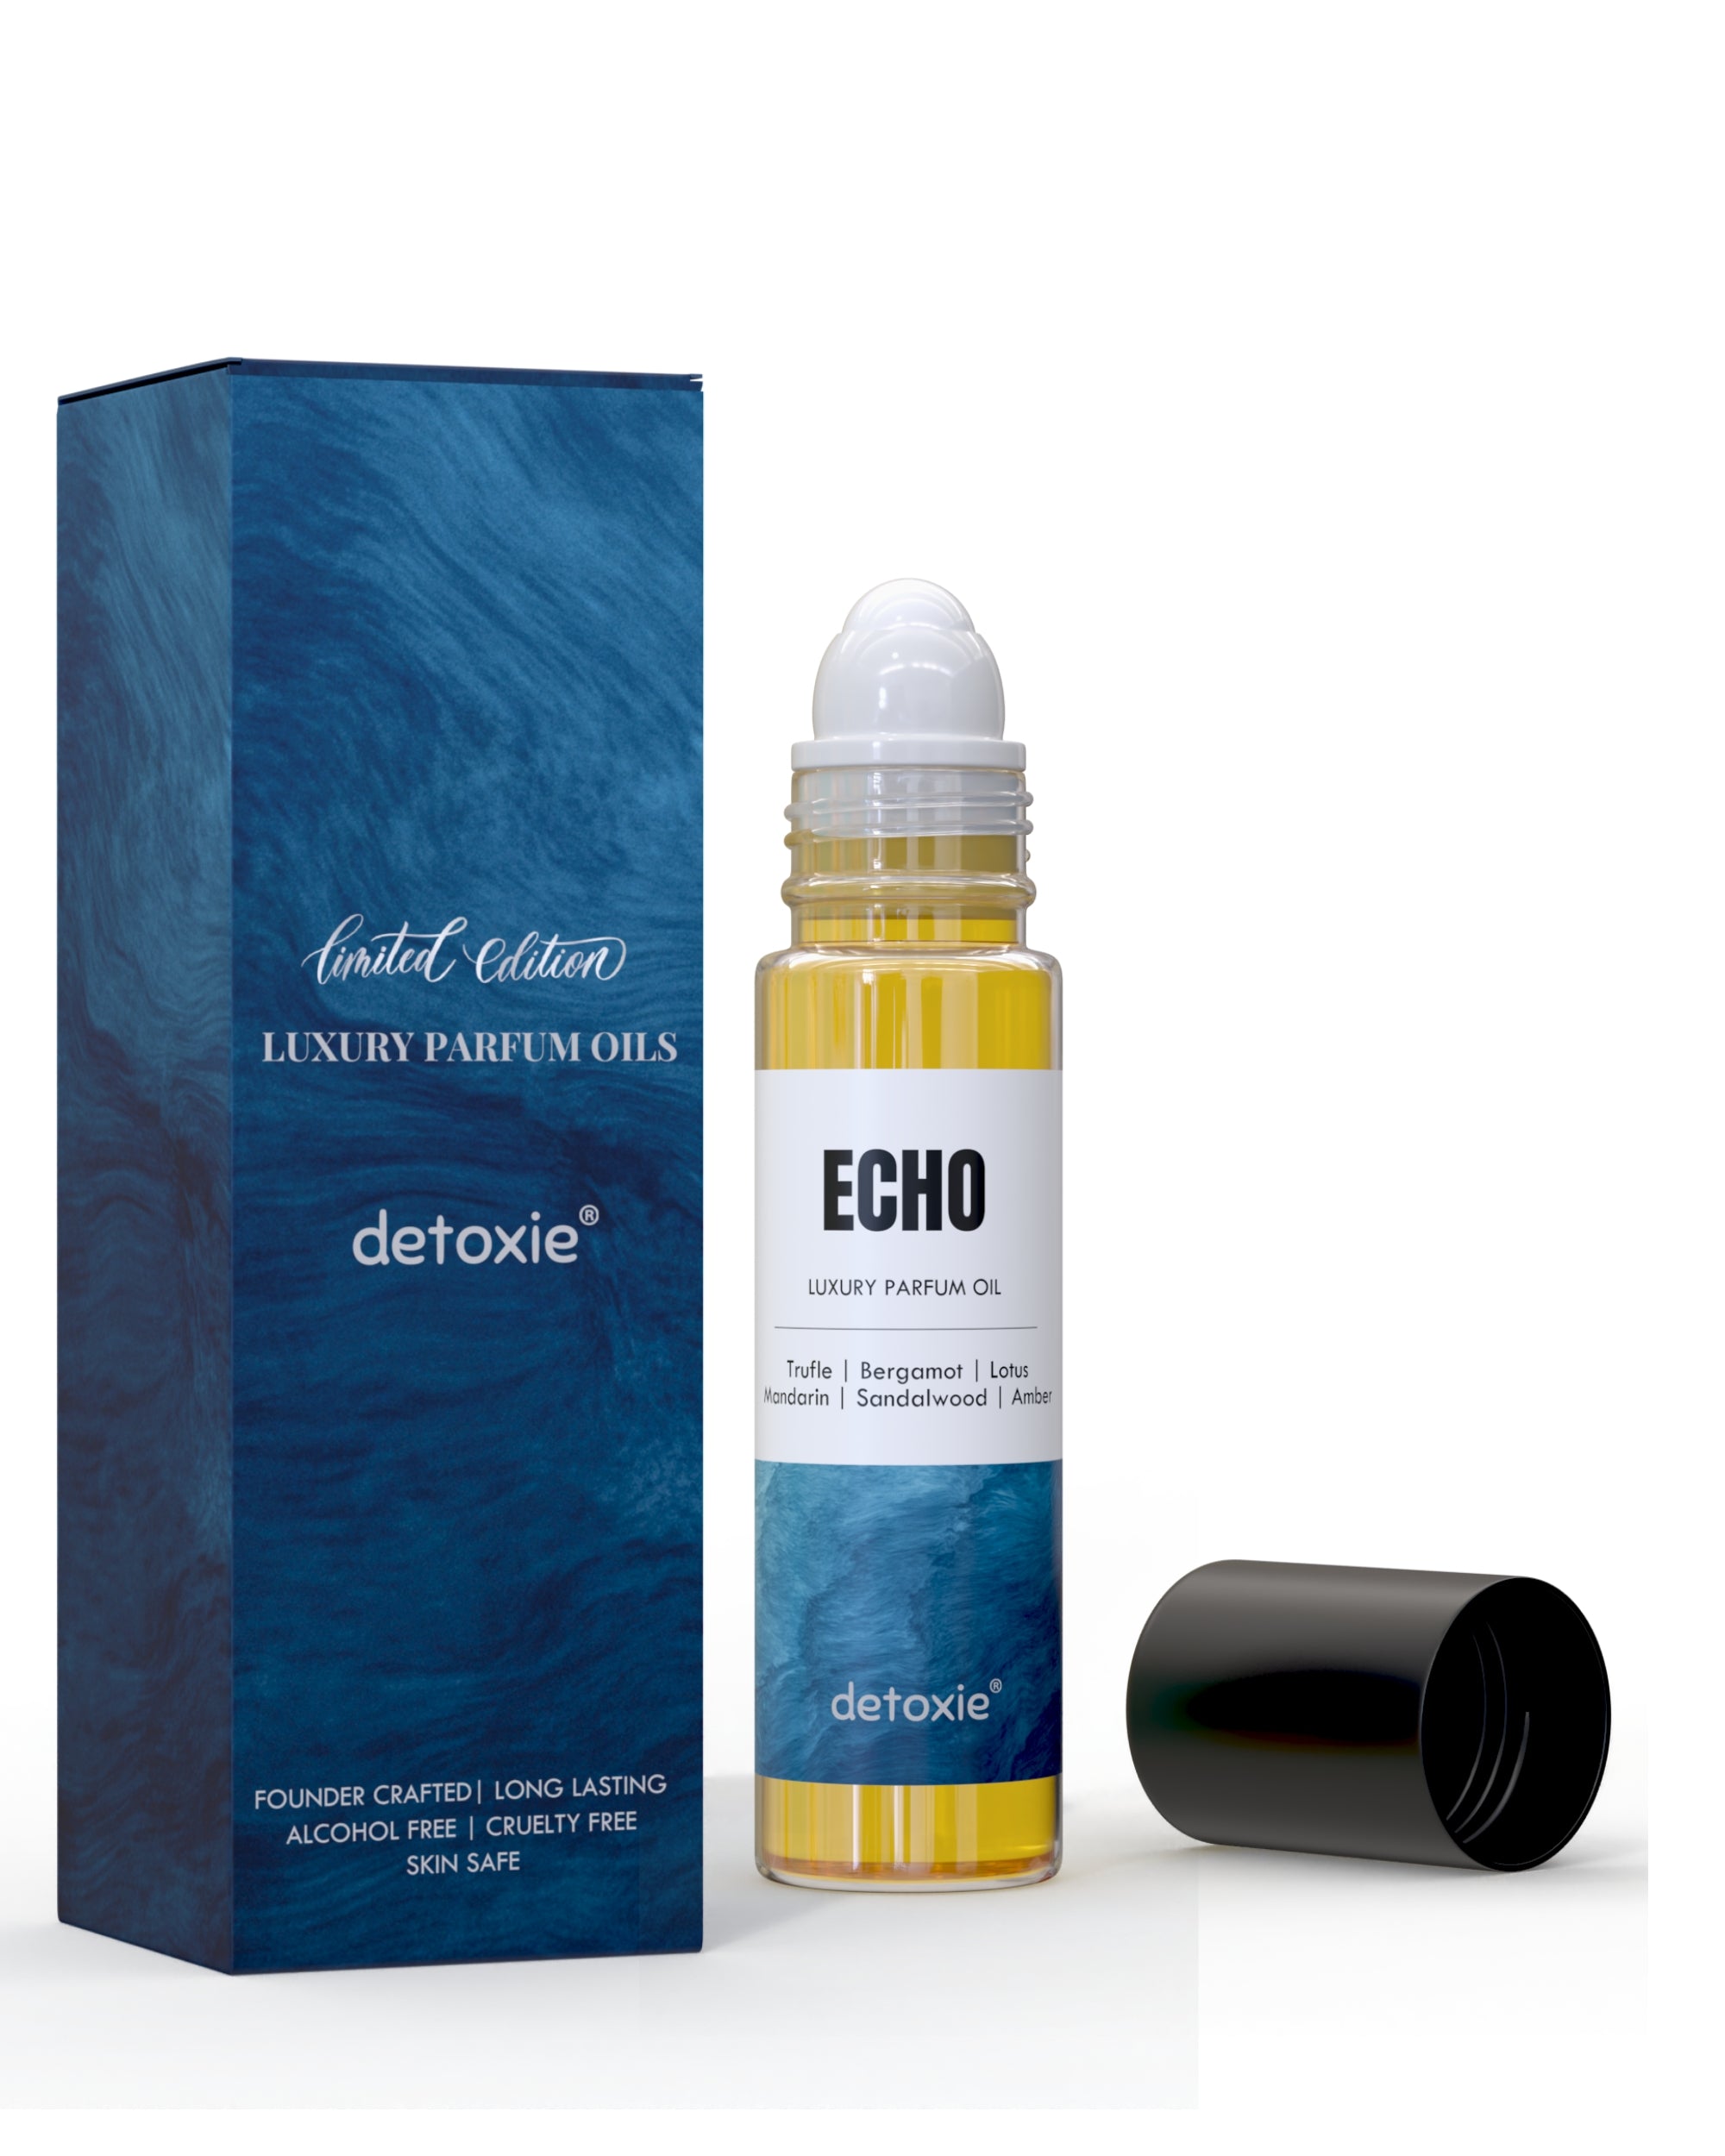 Echo - Luxury Parfum Oil (Attar)